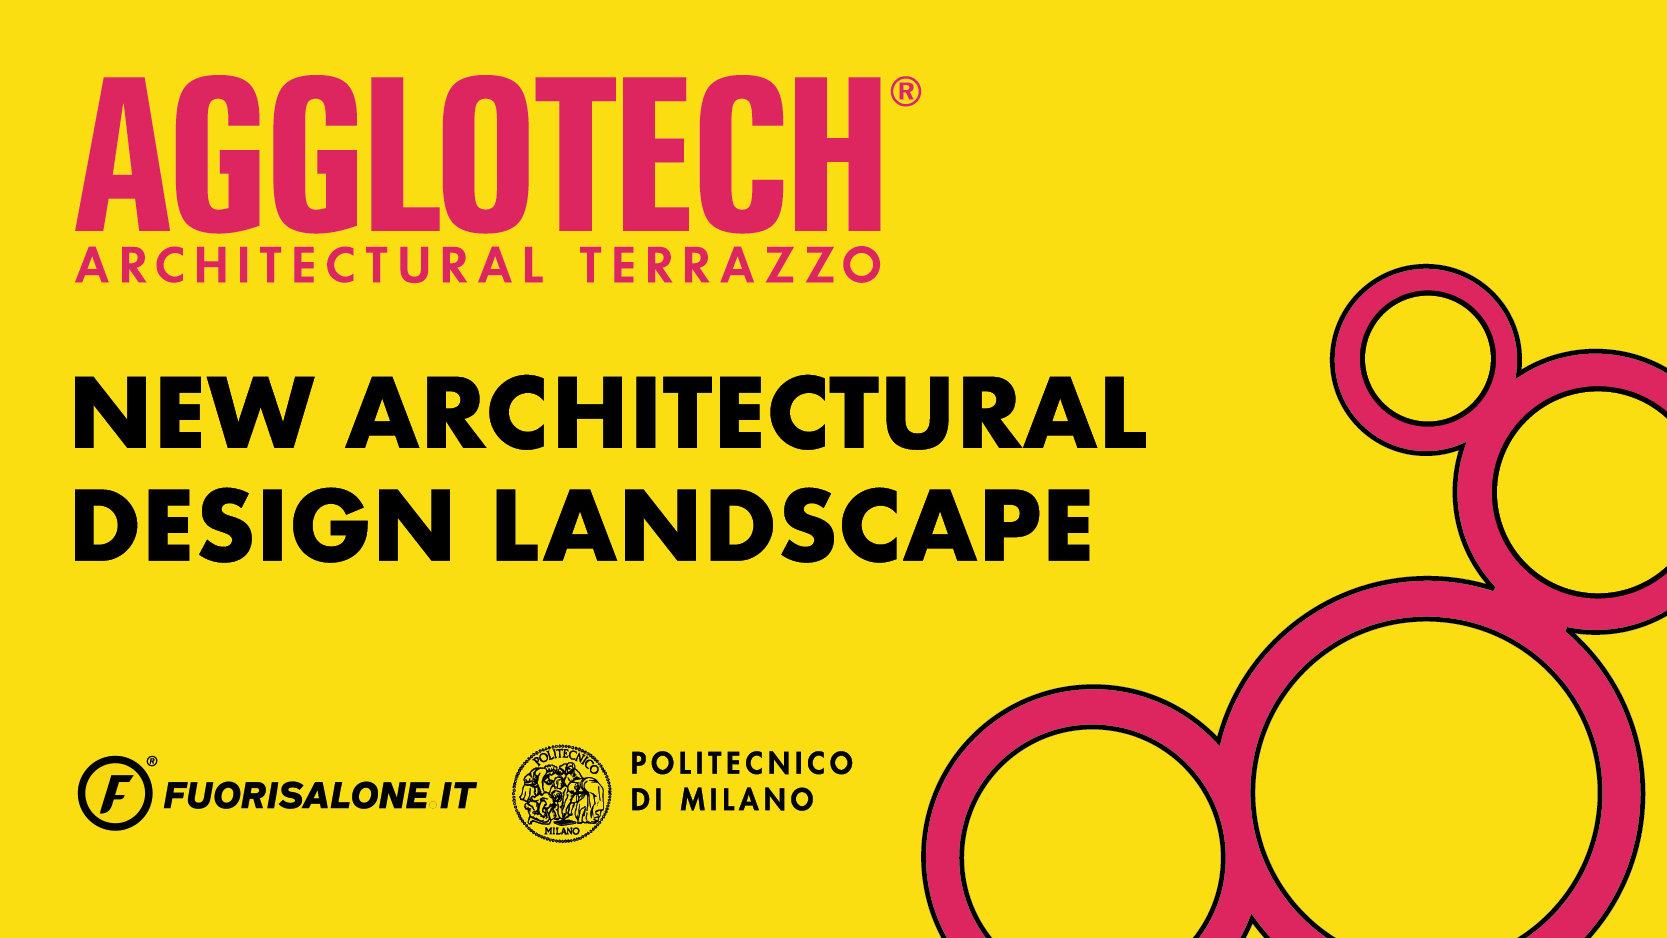 Agglotech für New architecural design landscape